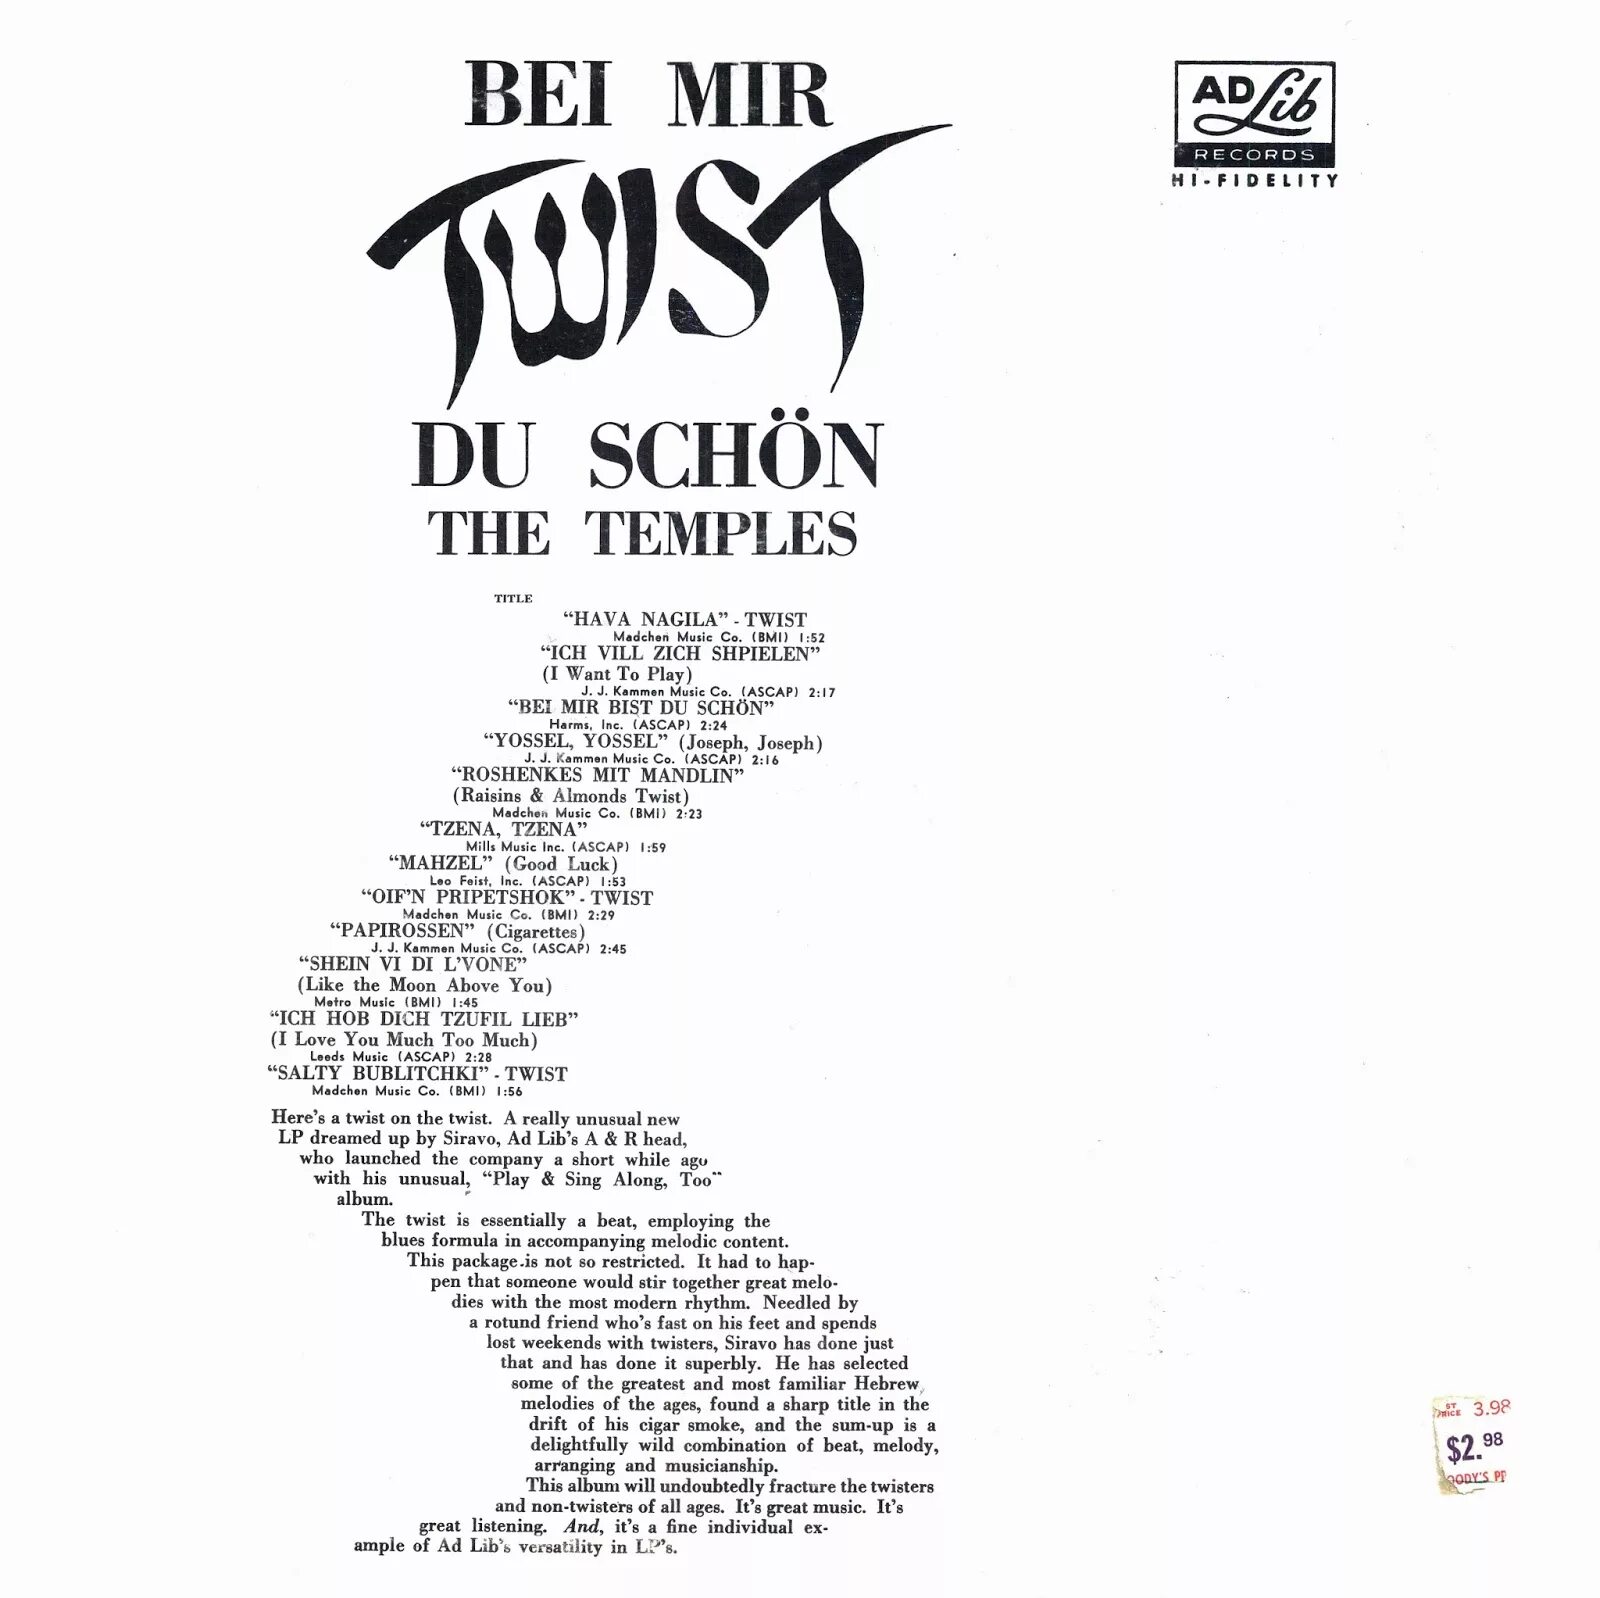 Mir schon. The Temples bei mir Twist du schön. The Temples bei mir Twist du schon 1963. The Temples 1967. The Temples - ich vill zich Shpielen (i want to Play).